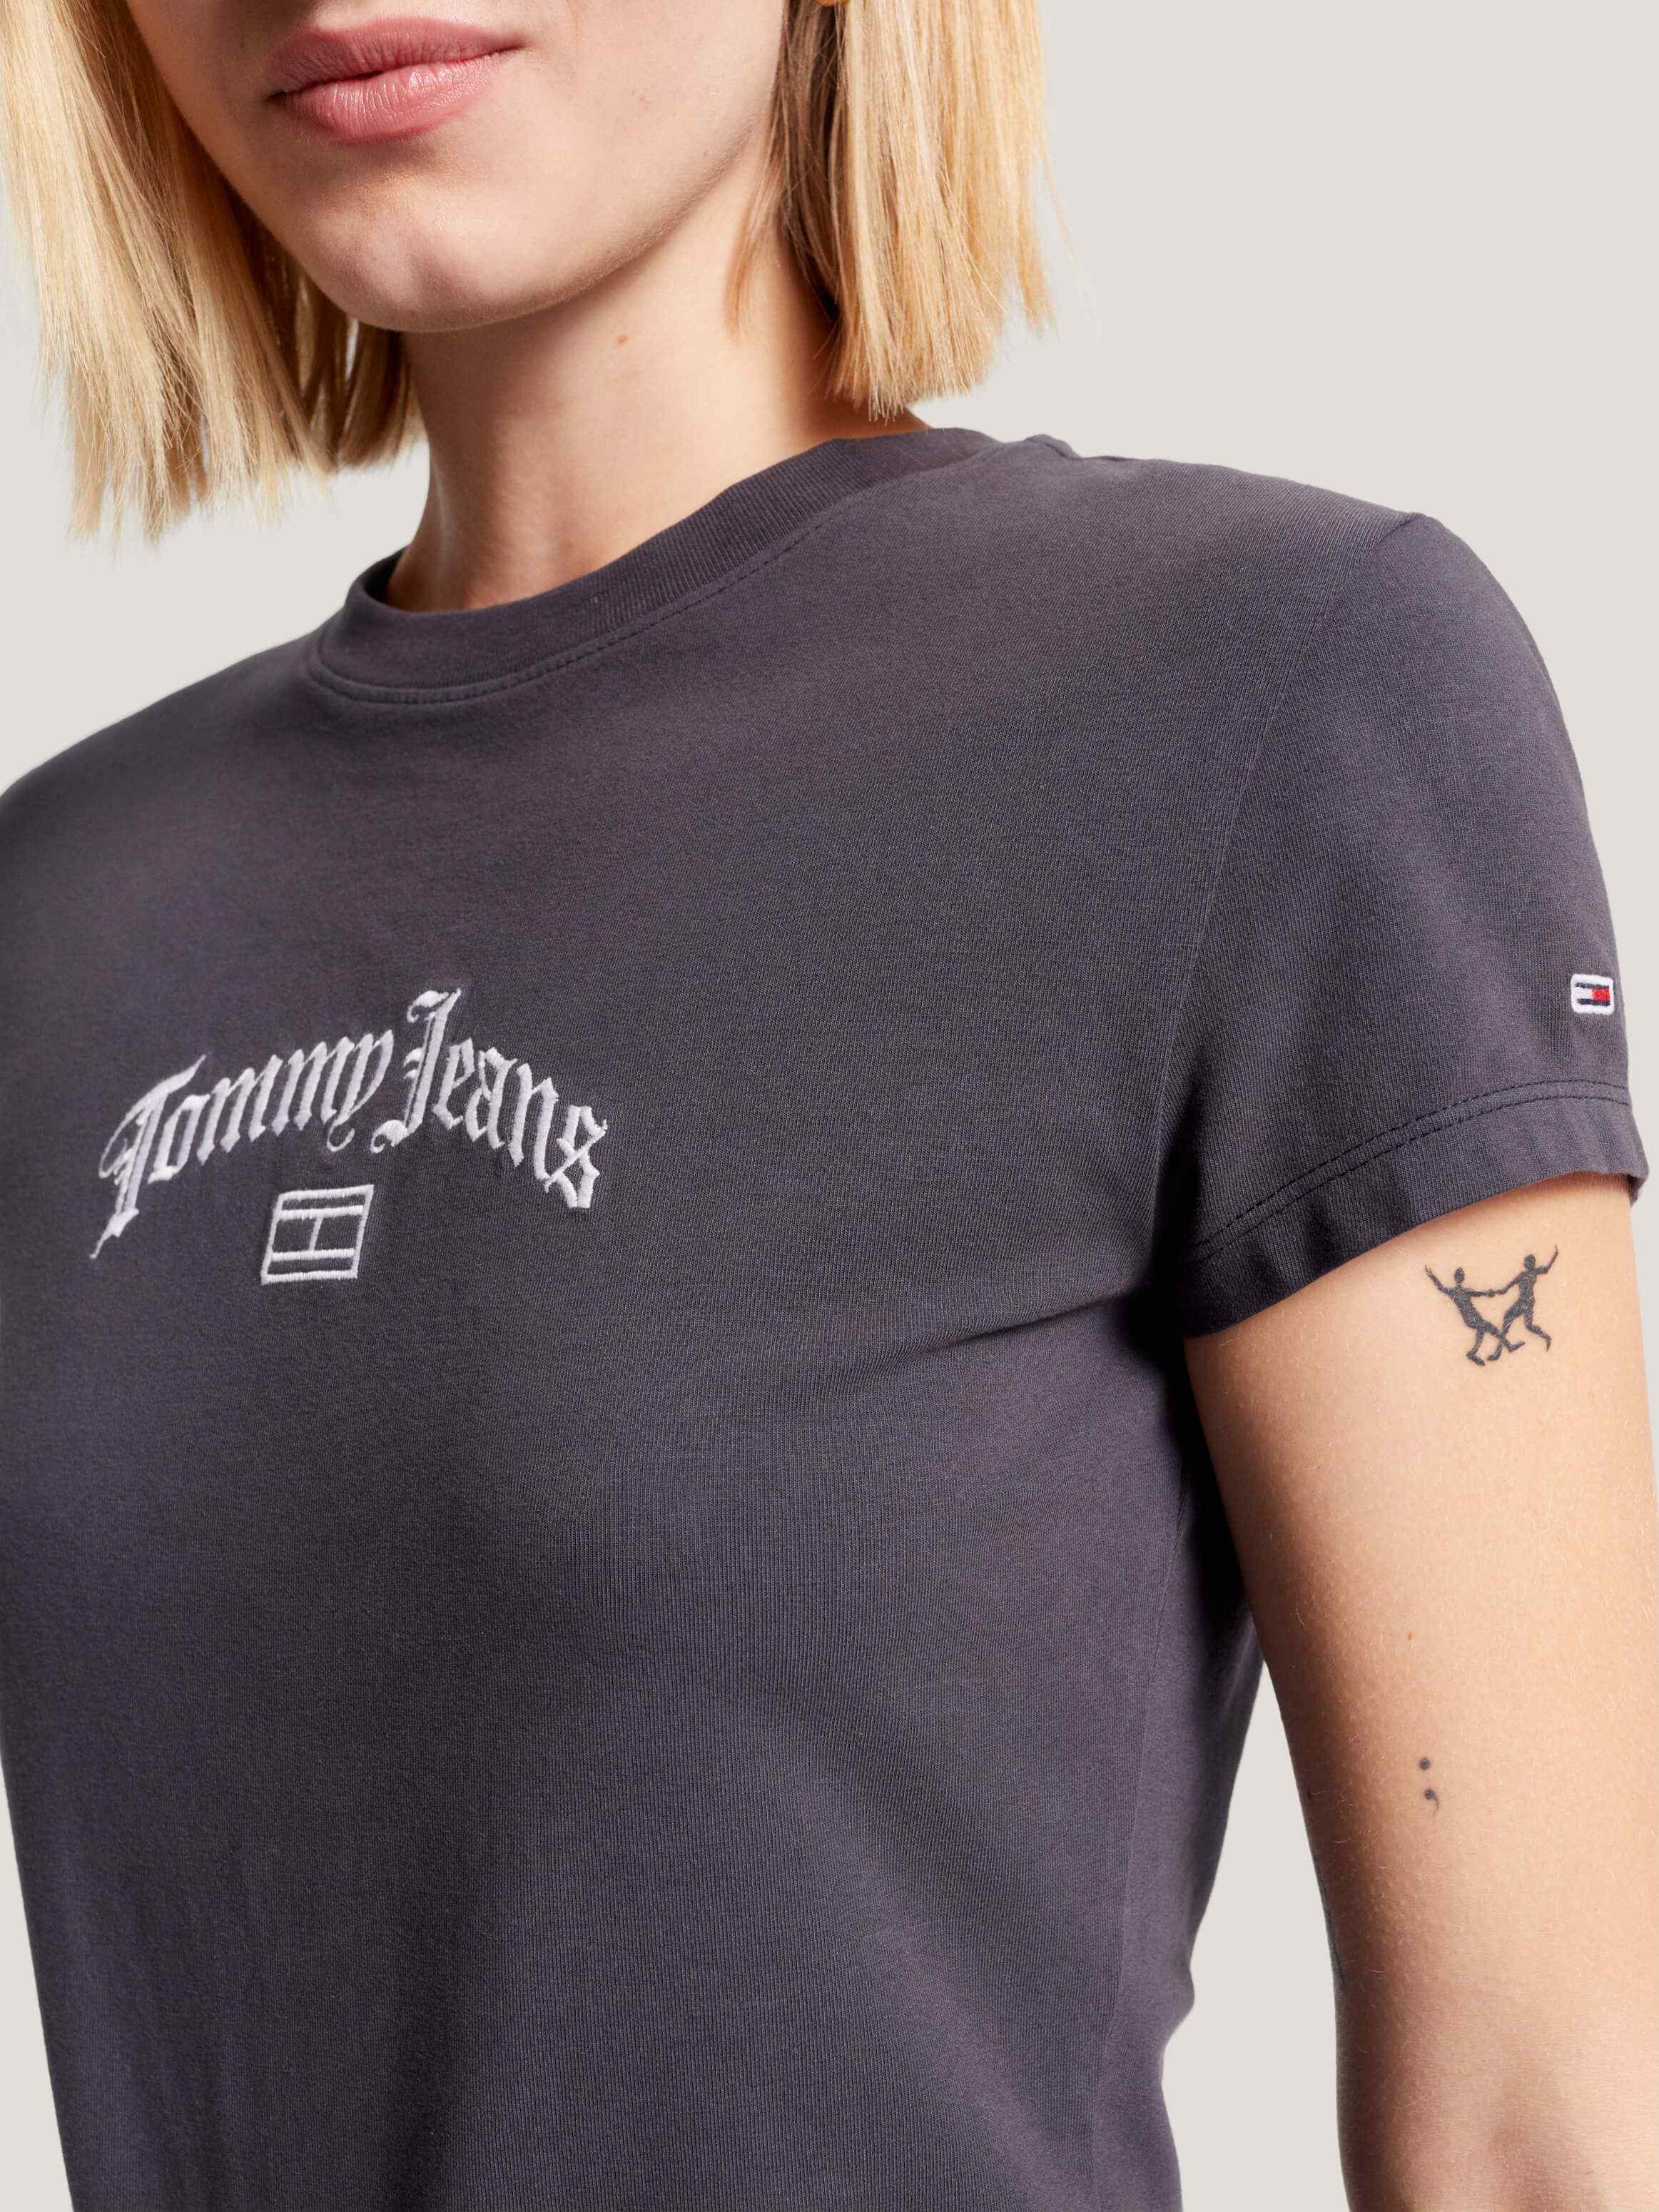 Playera con logo grunge bordado de mujer Tommy Jeans